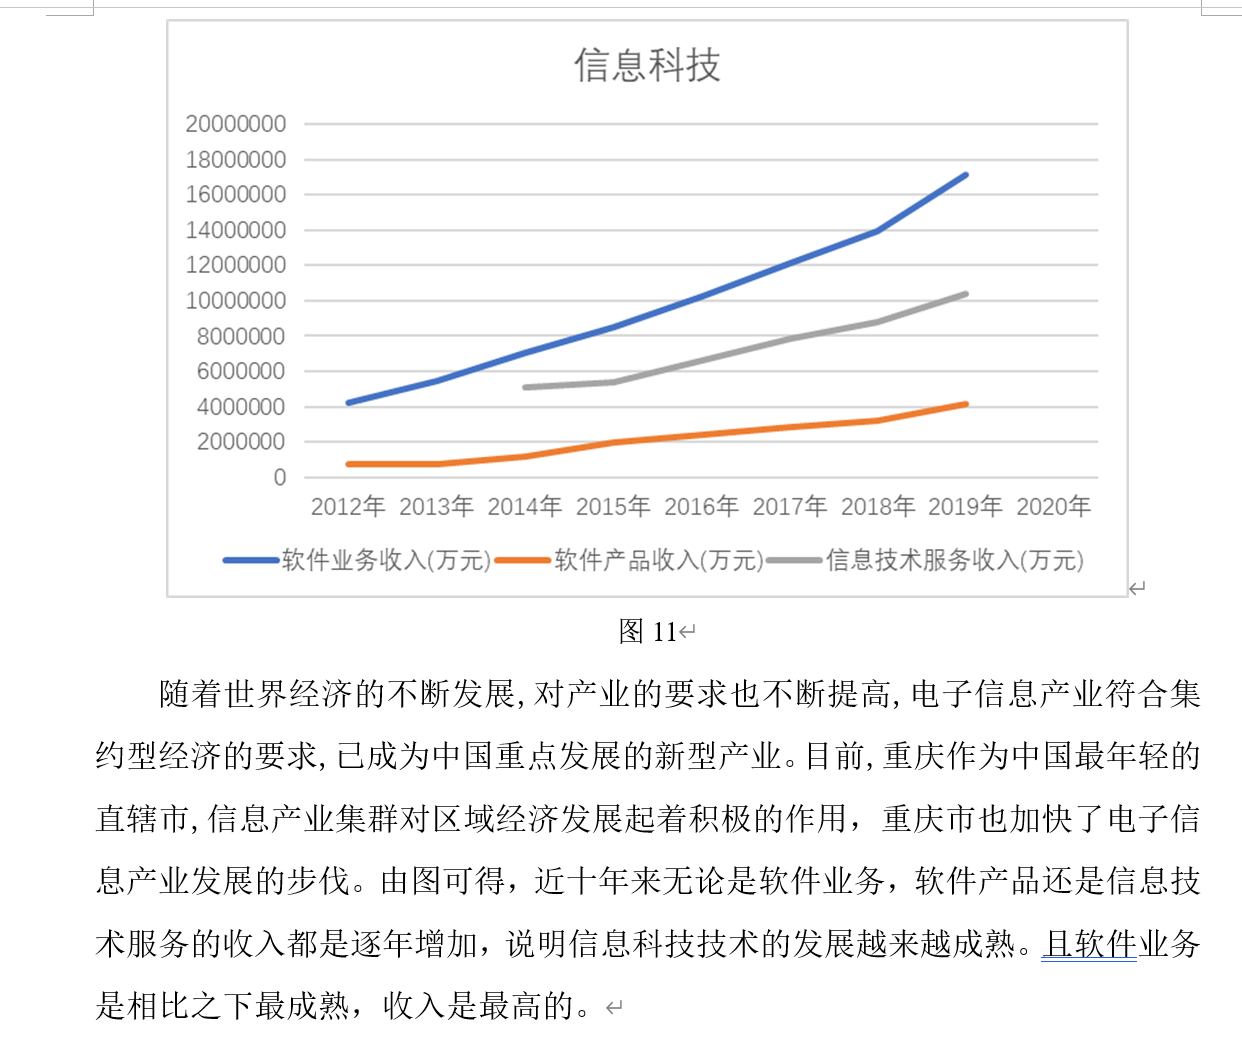 产业结构升级对重庆市经济的影响